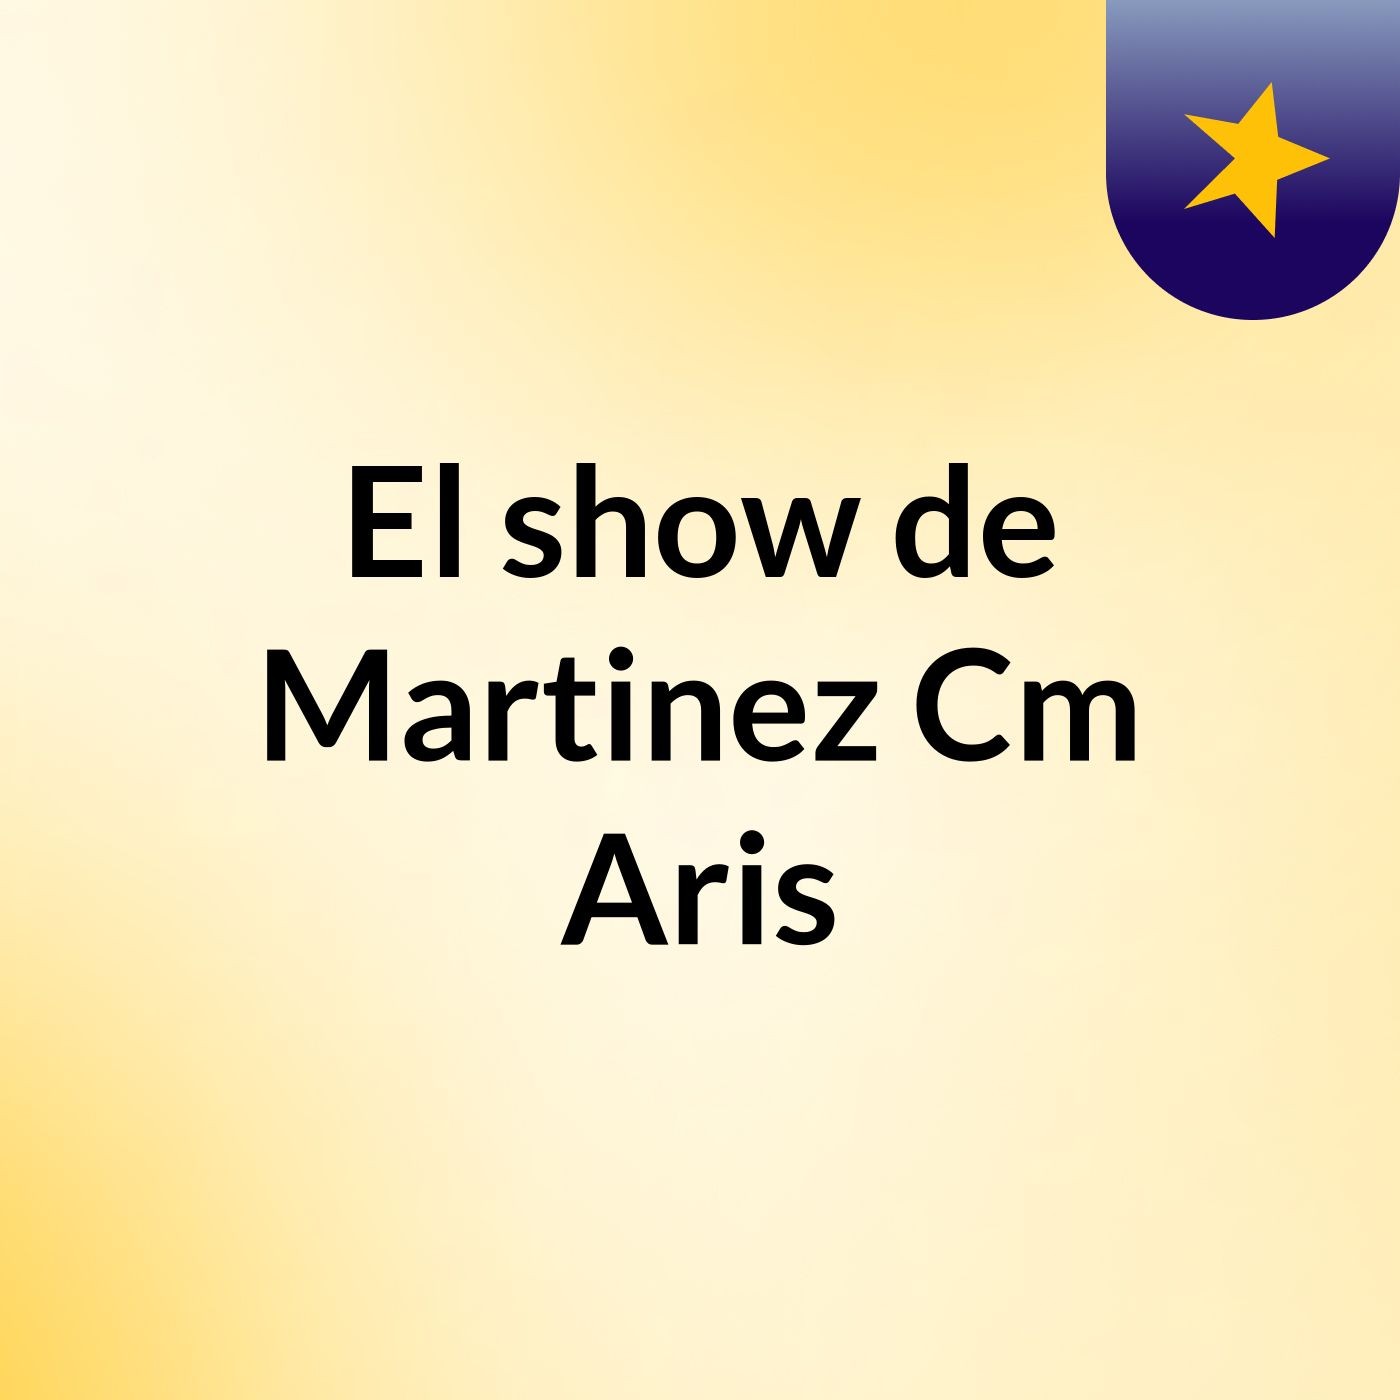 El show de Martinez Cm Aris